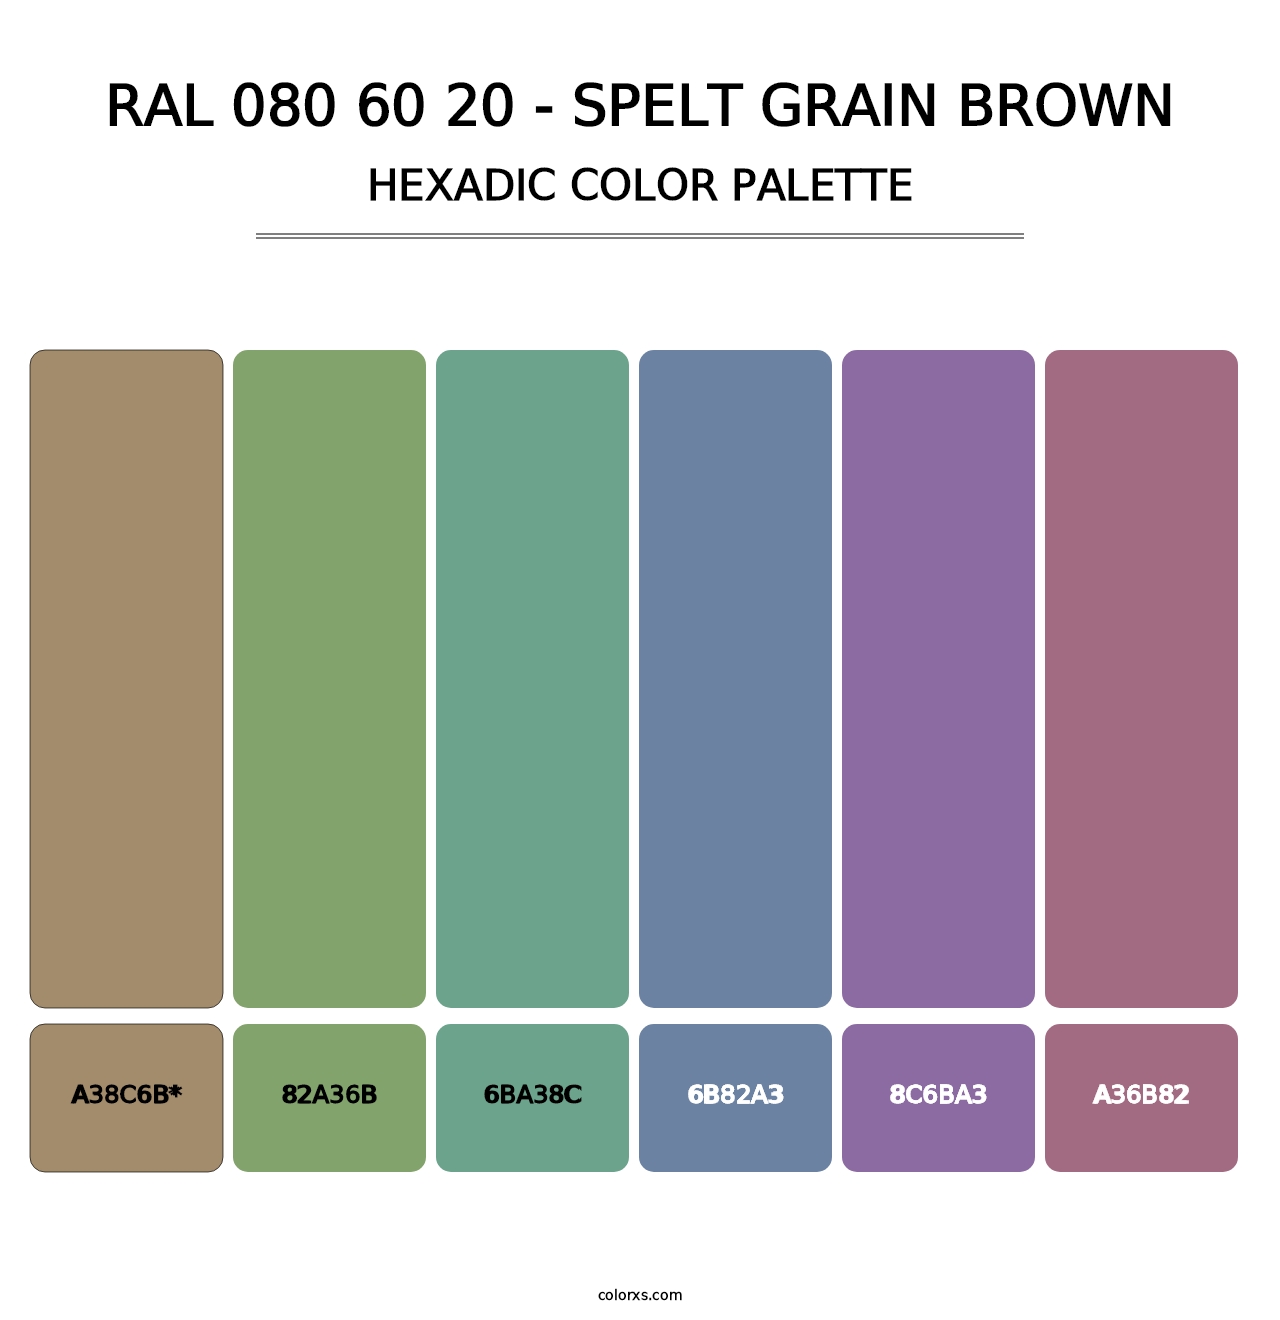 RAL 080 60 20 - Spelt Grain Brown - Hexadic Color Palette